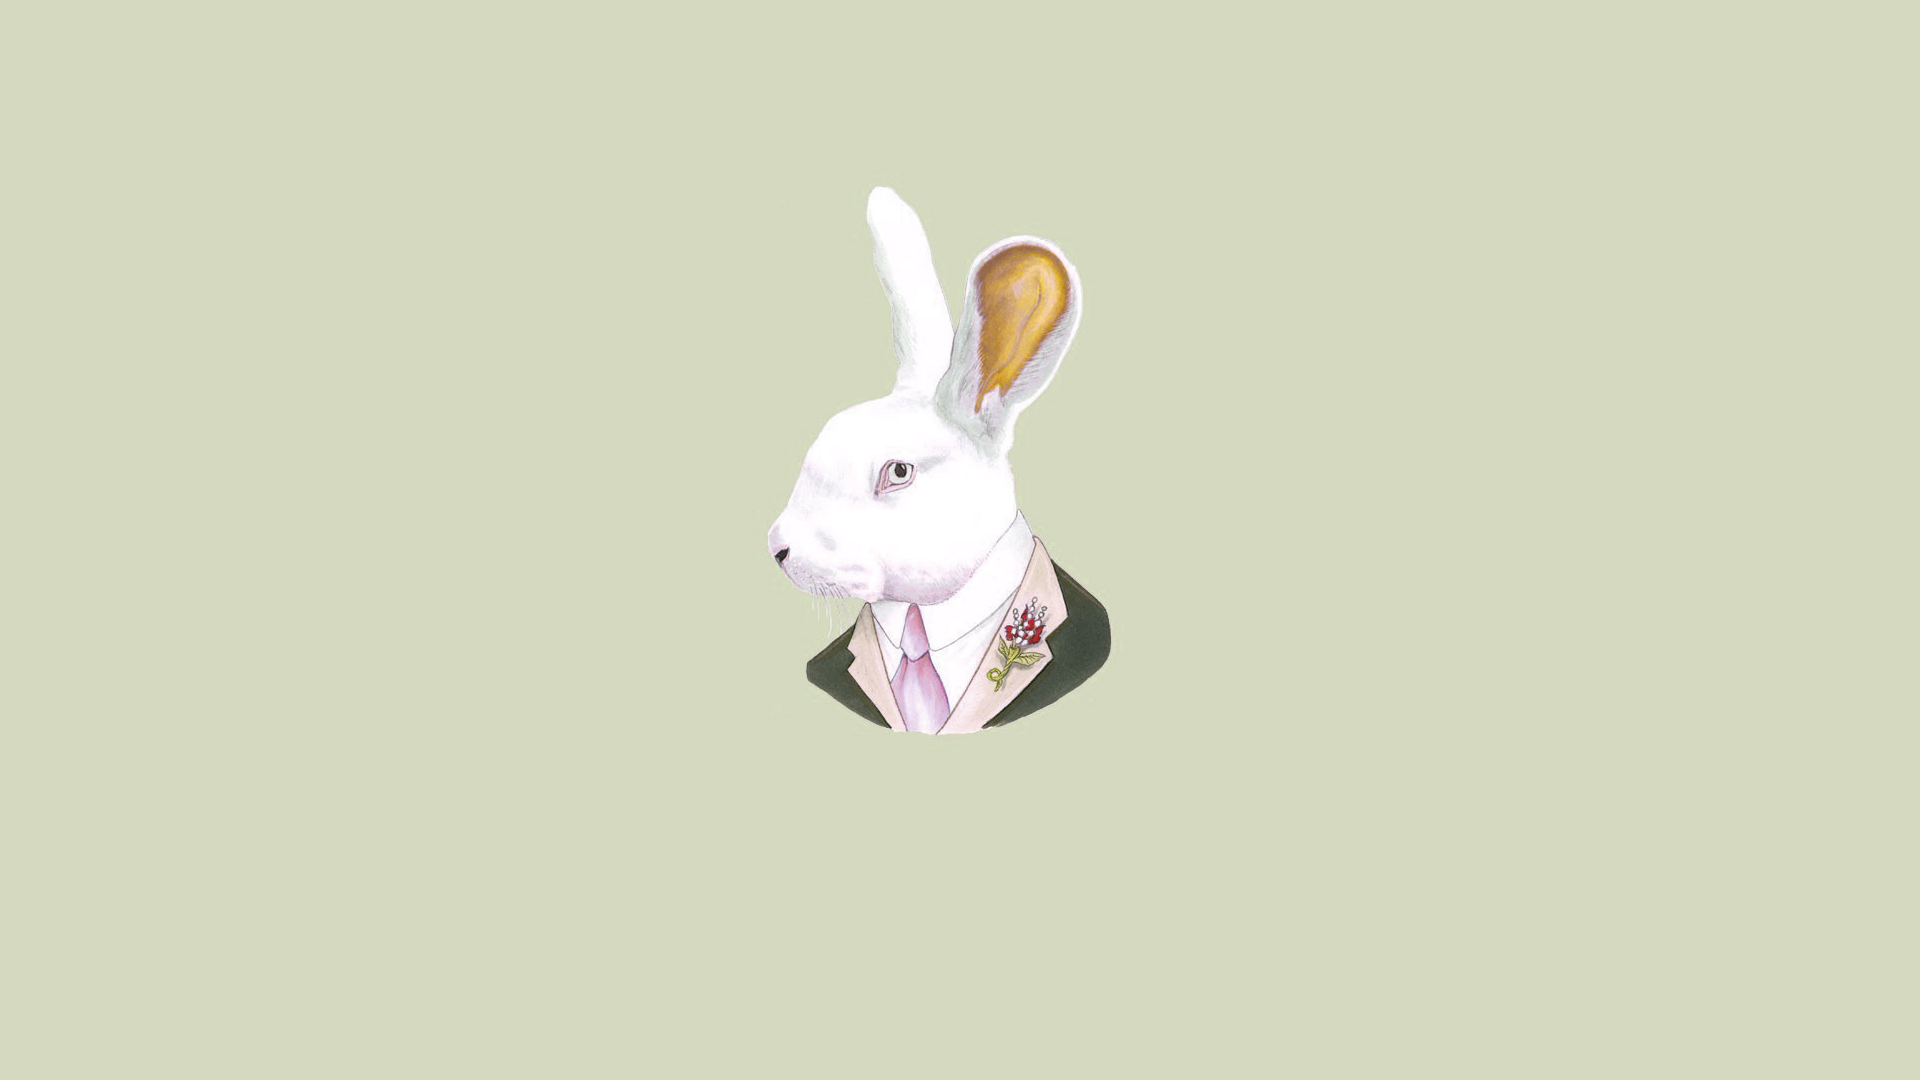 галстук, голова, ухи, кролик, заяц, светлый фон, rabbit